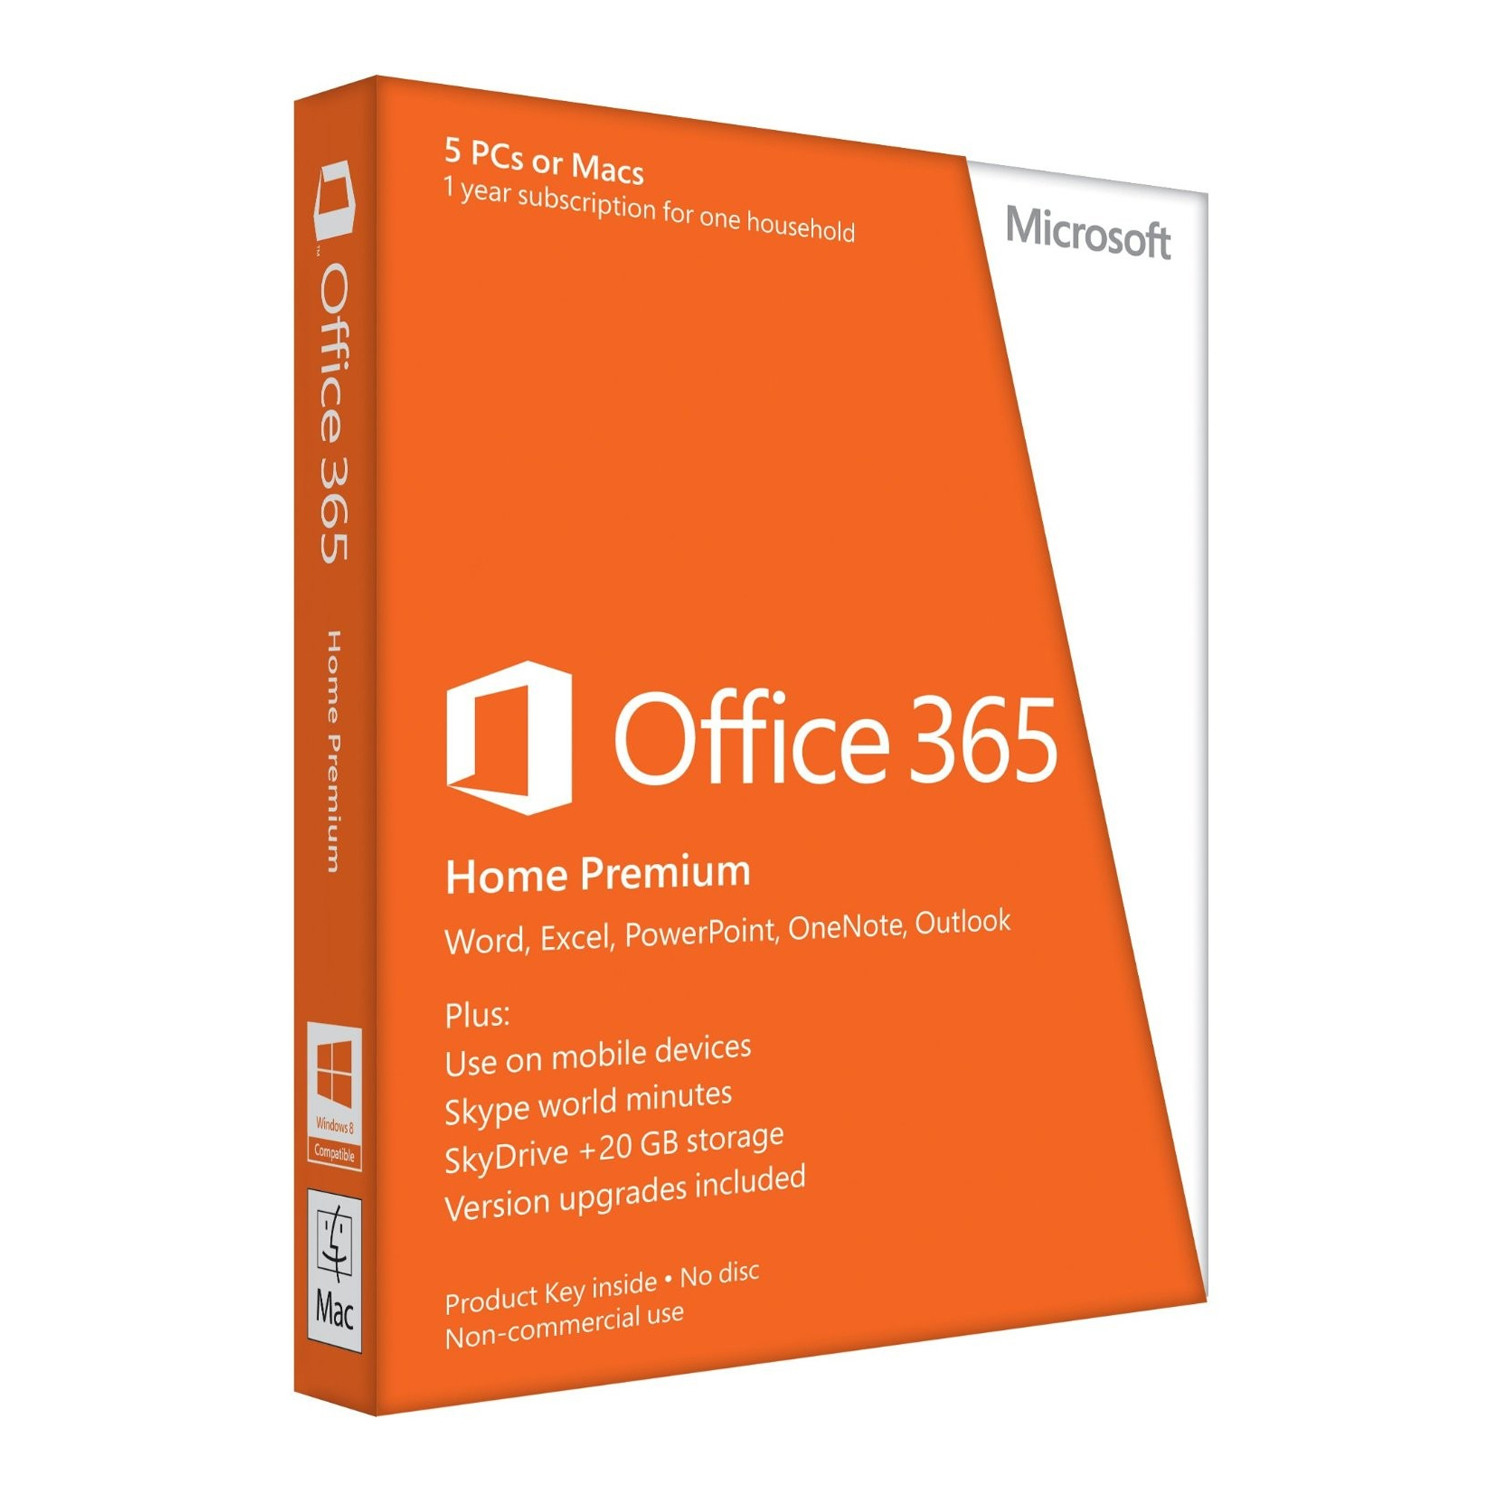 Microsoft Office 365 Home Premium 5 licencia(s) Descarga electrónica de software (ESD, Electronic Software Download) Plurilingüe 1 año(s)